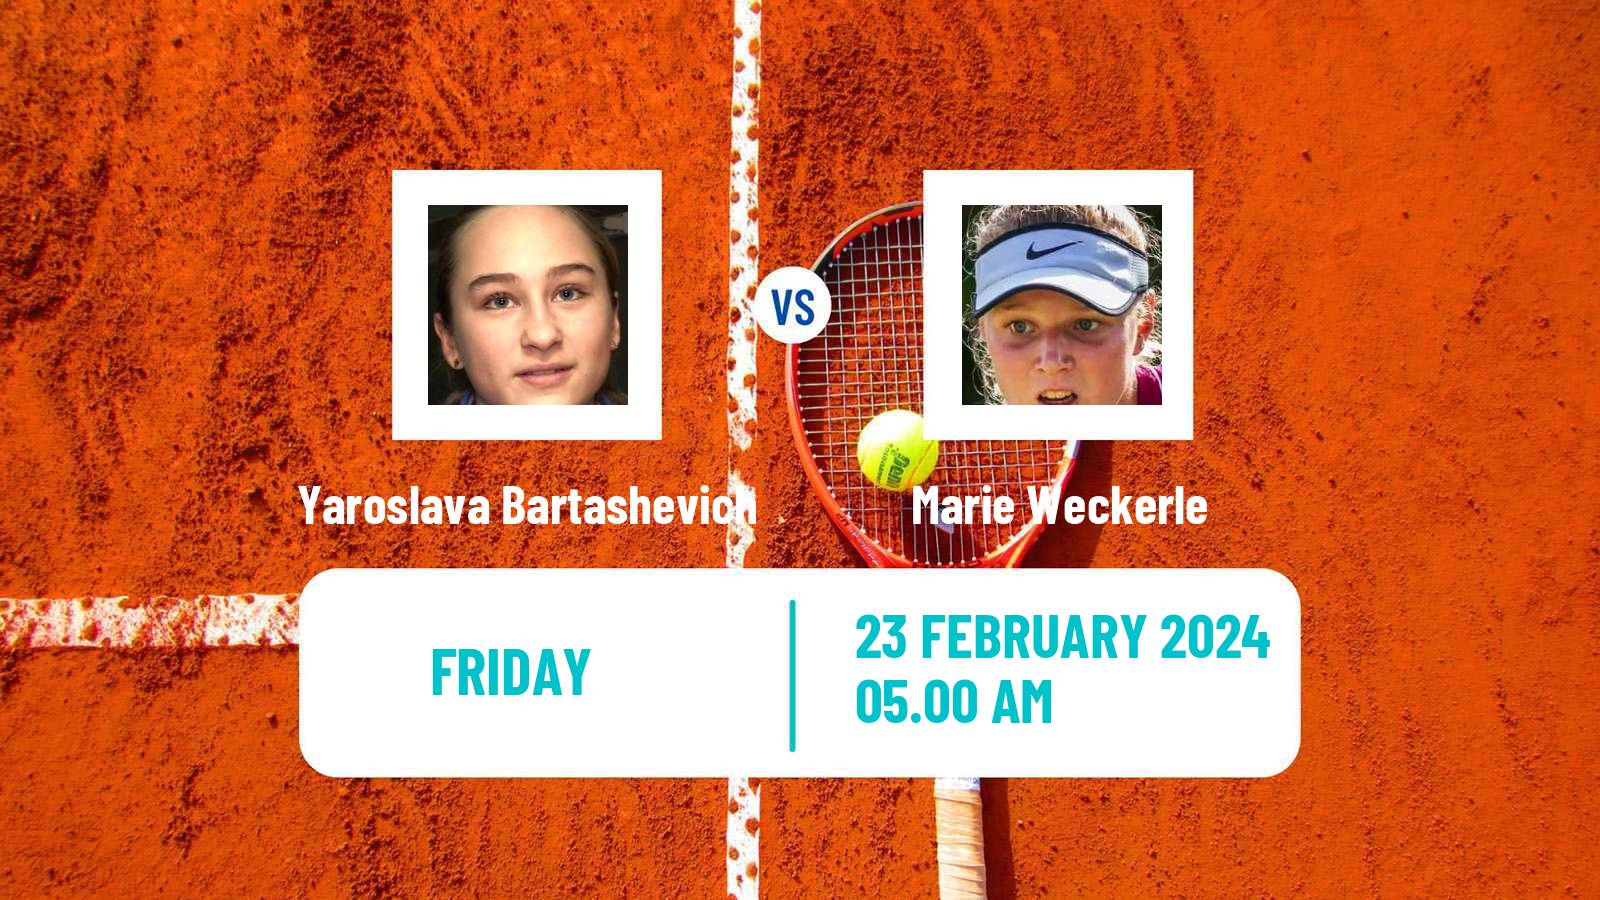 Tennis ITF W15 Manacor 2 Women Yaroslava Bartashevich - Marie Weckerle